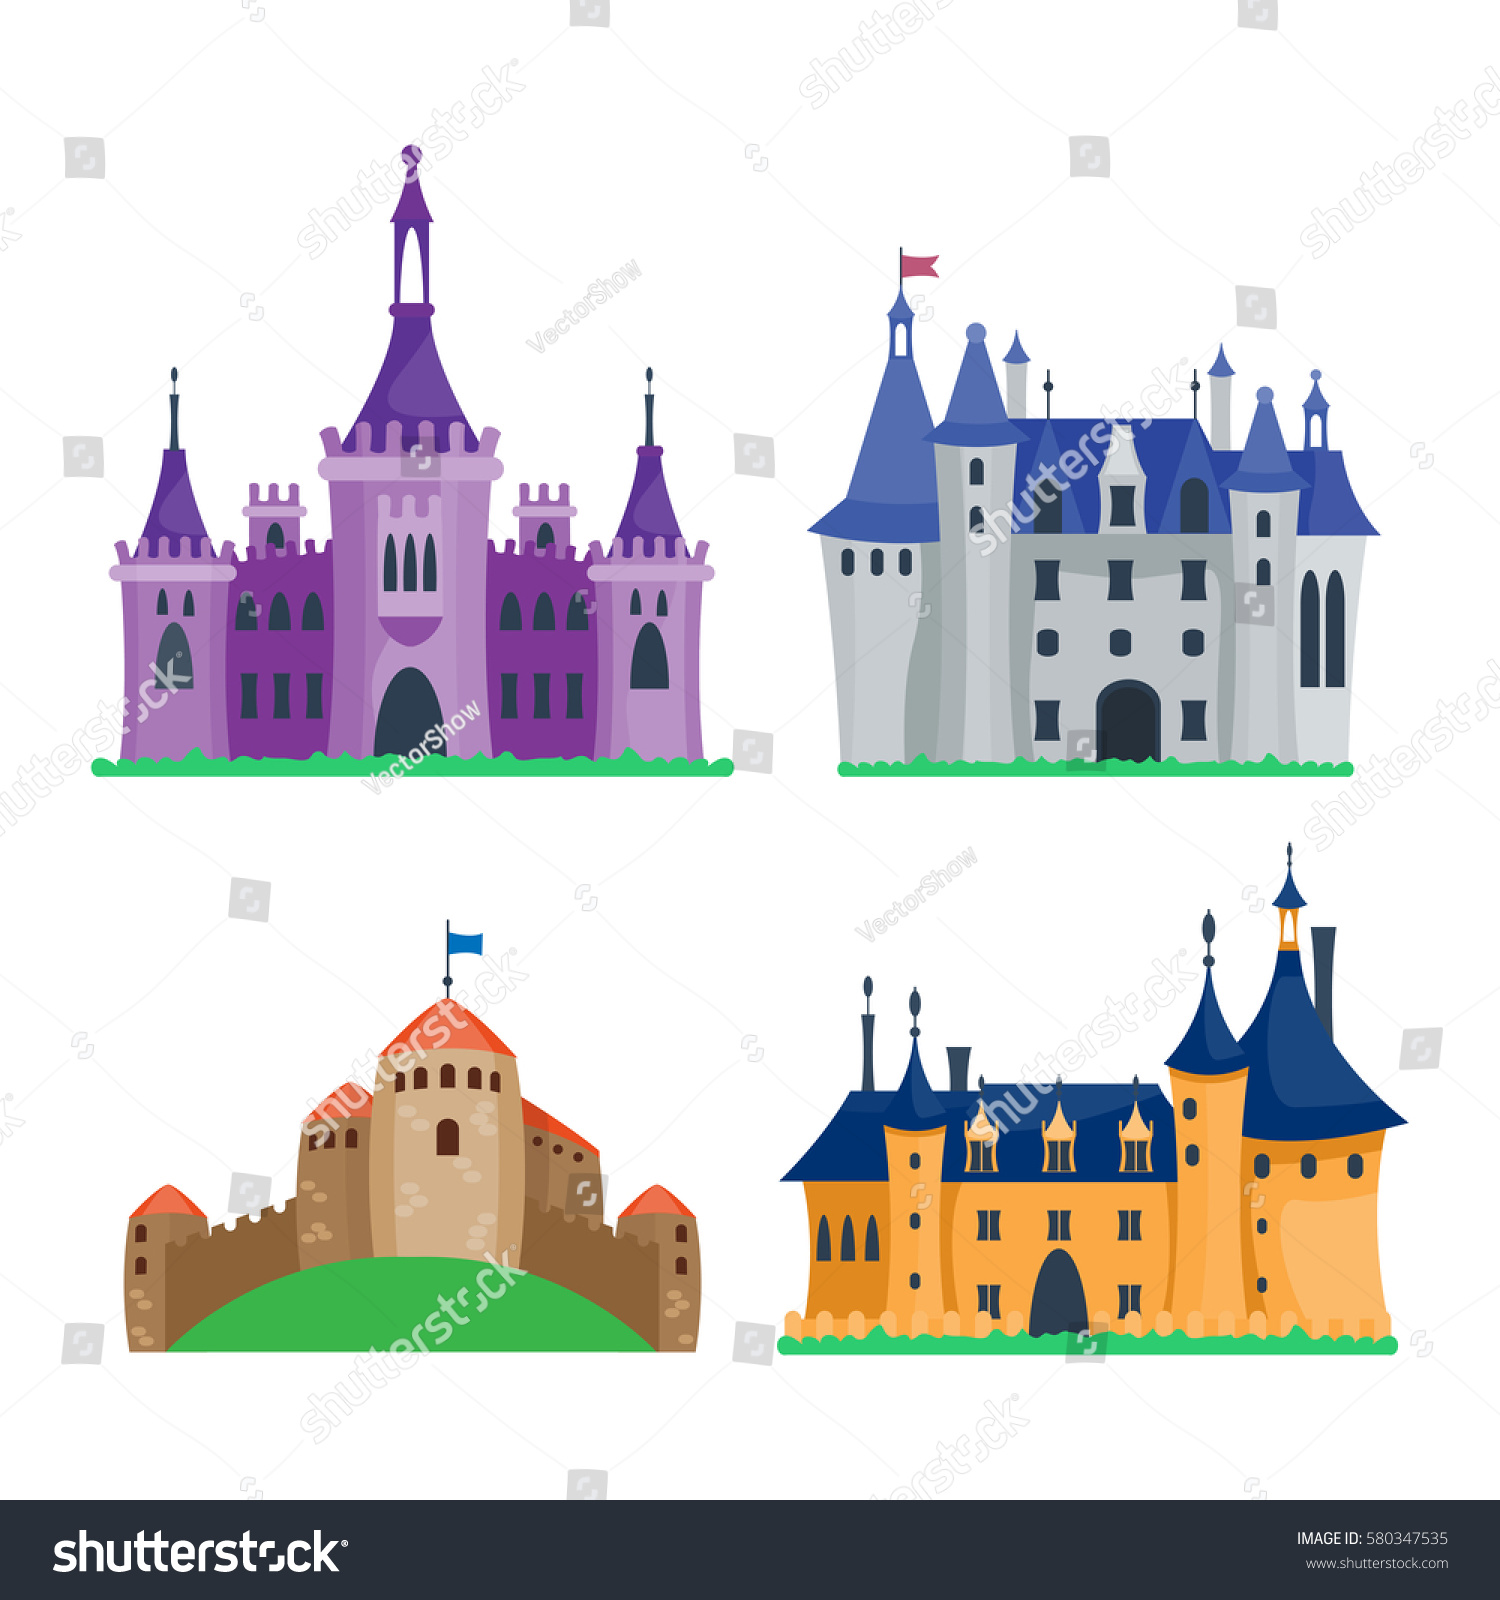 Vector Cartoon Castle Images - img-Baha